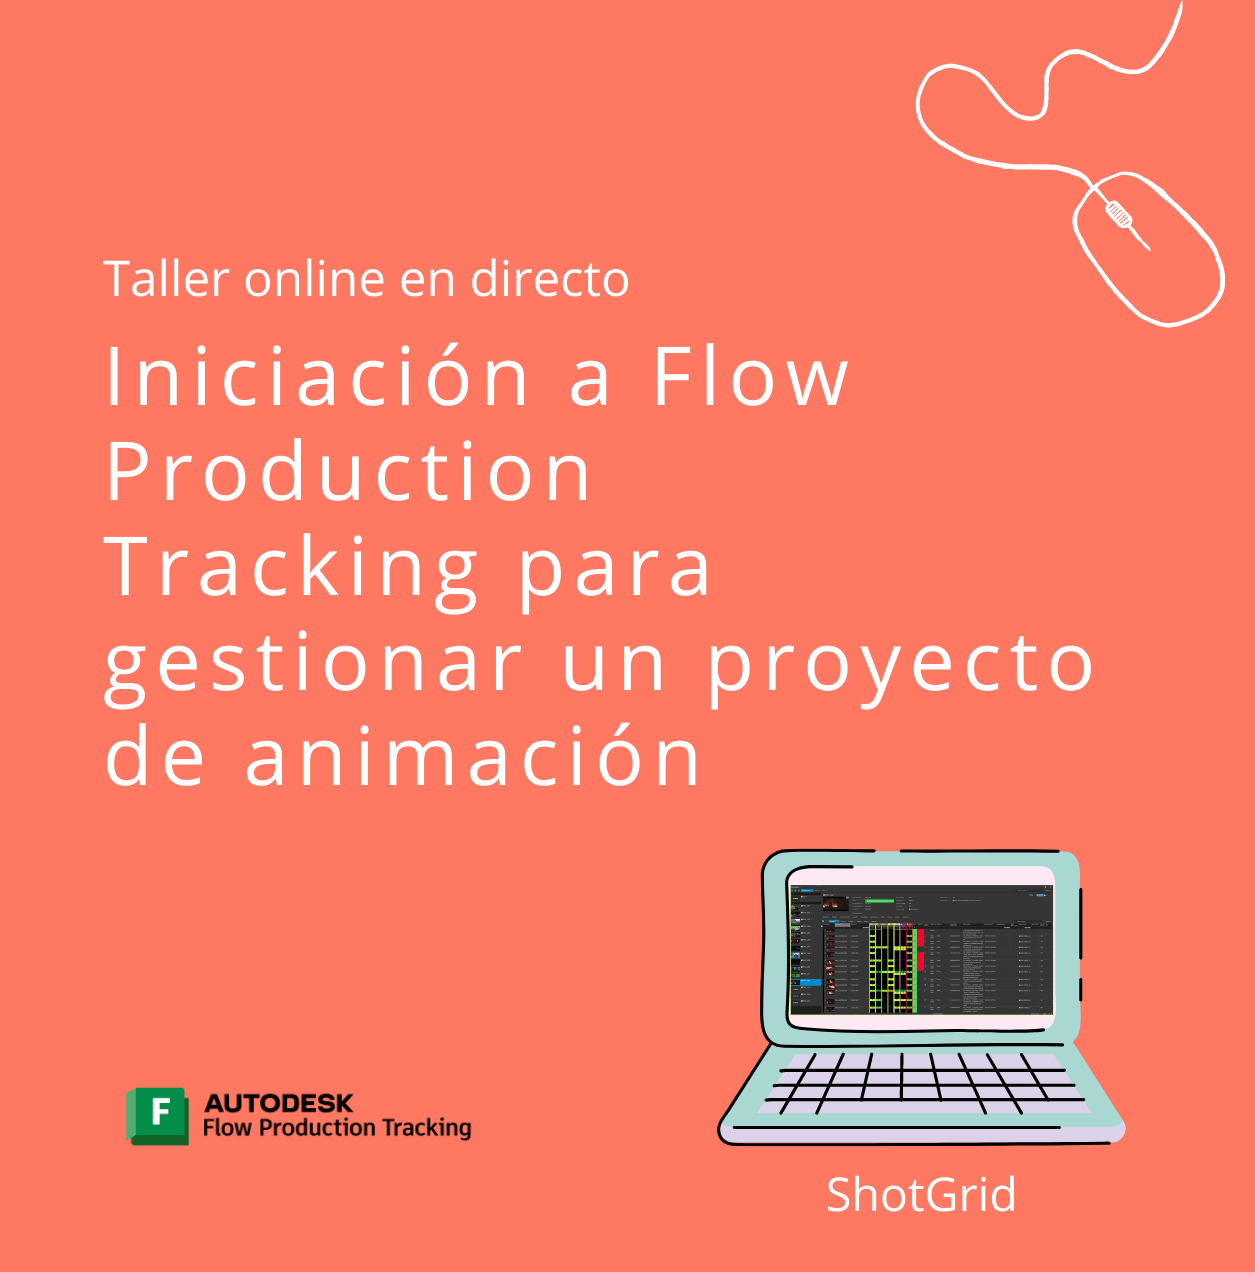 Iniciación a Flow Production Tracking Shotgrid para gestionar un proyecto de animación – Curso práctico ONLINE en directo